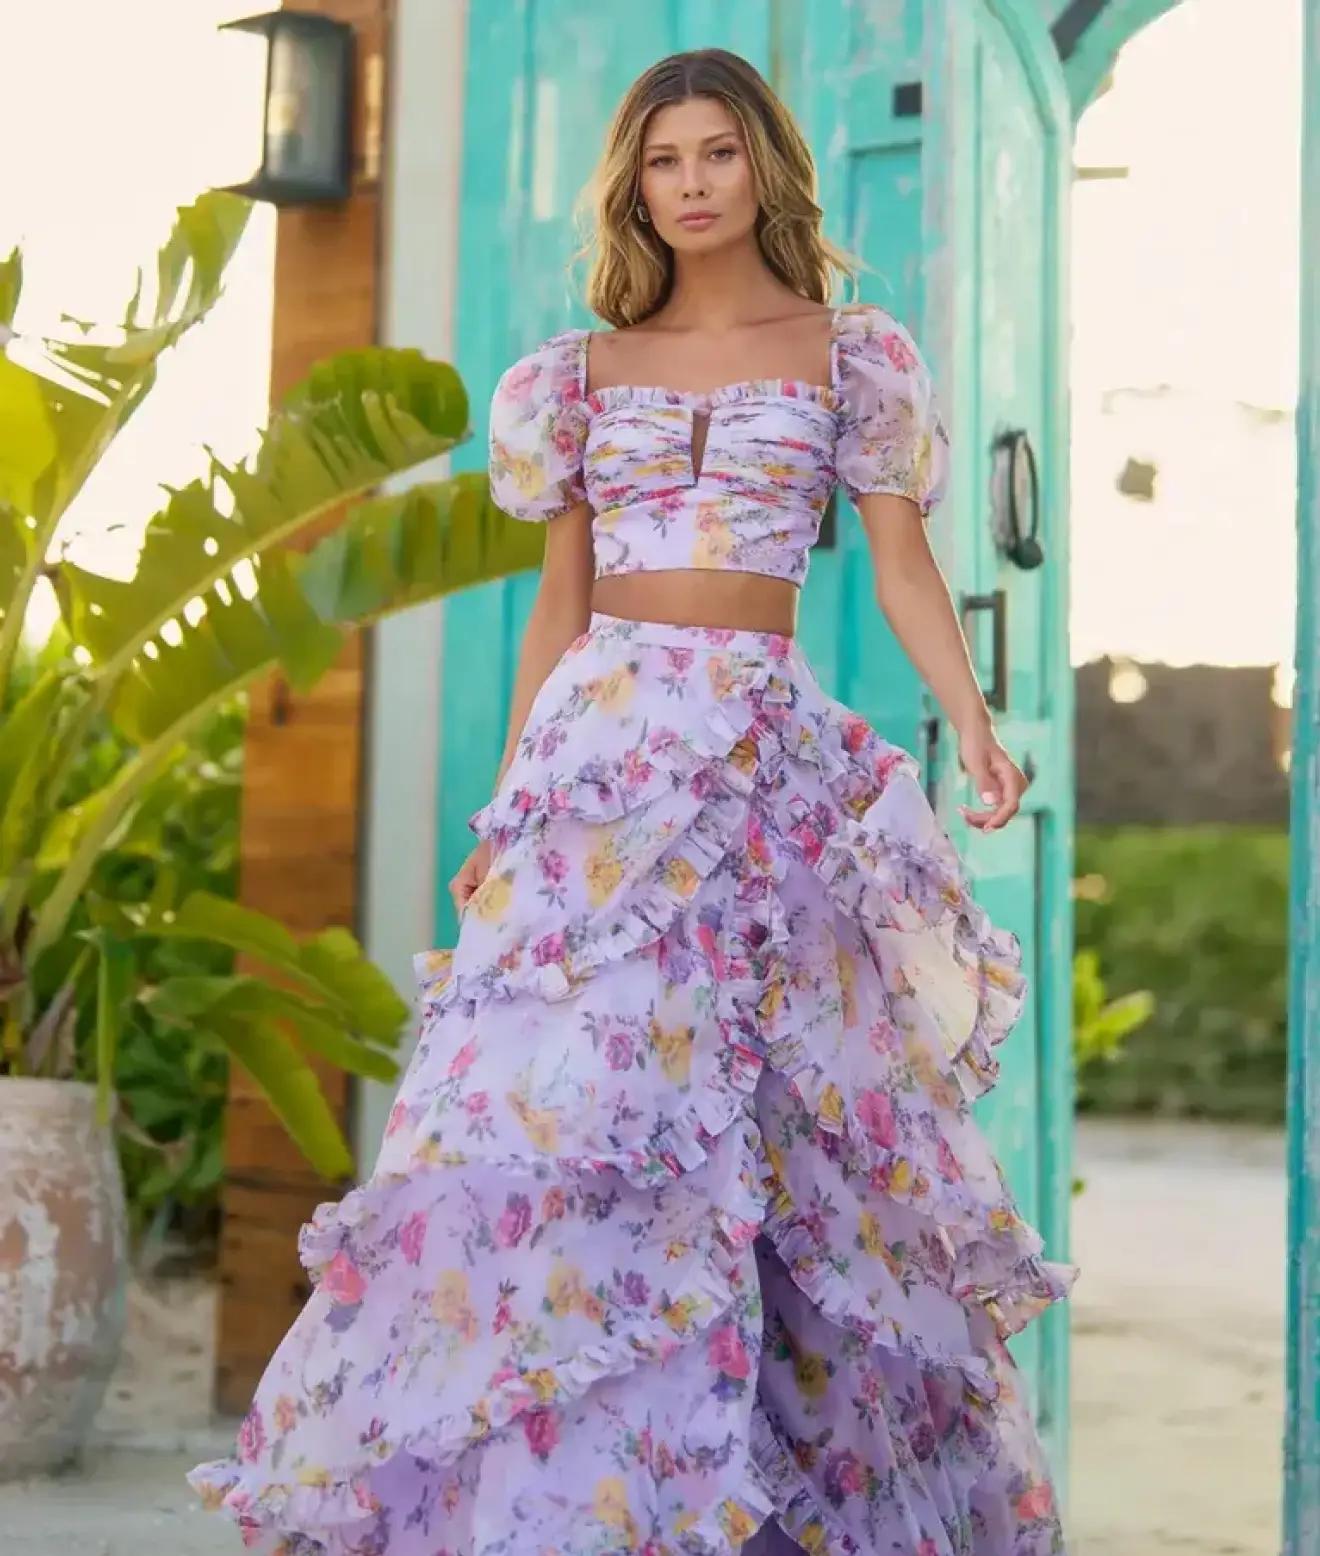 Model wearing a purple prom dress